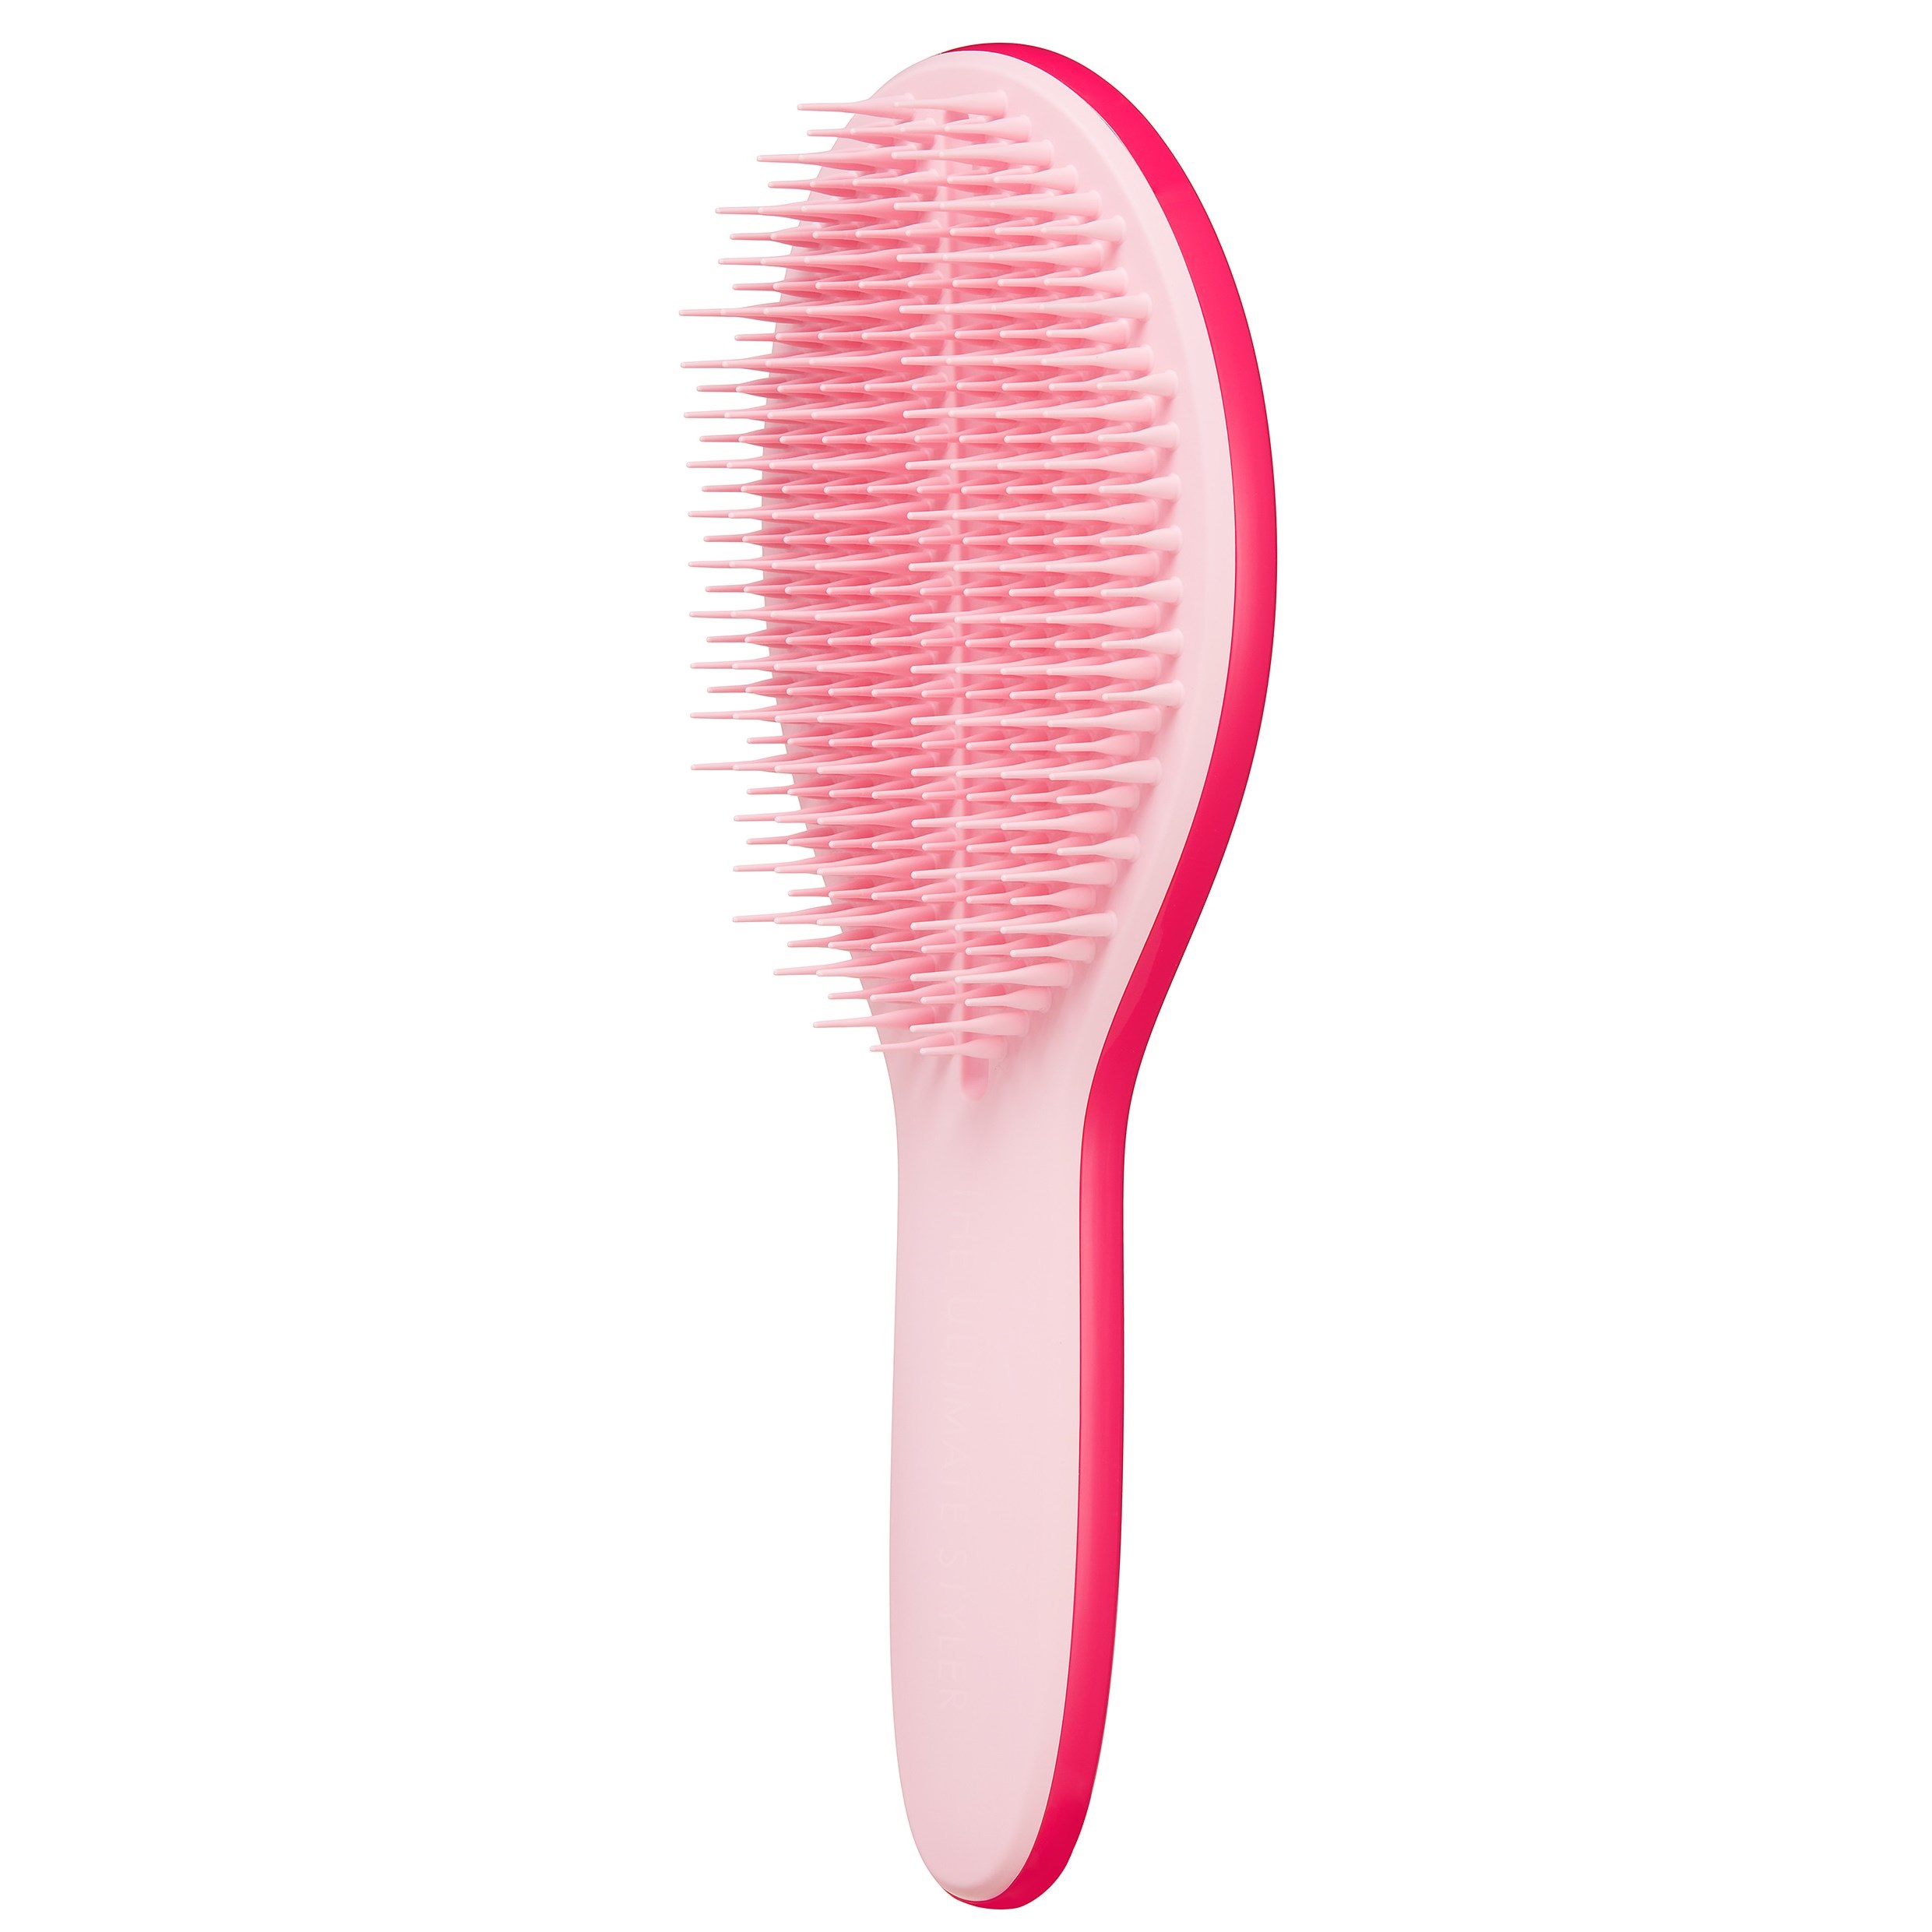 Zdjęcia - Szczotka do włosów Tangle Teezer The Ultimate Styler Bright Pink 